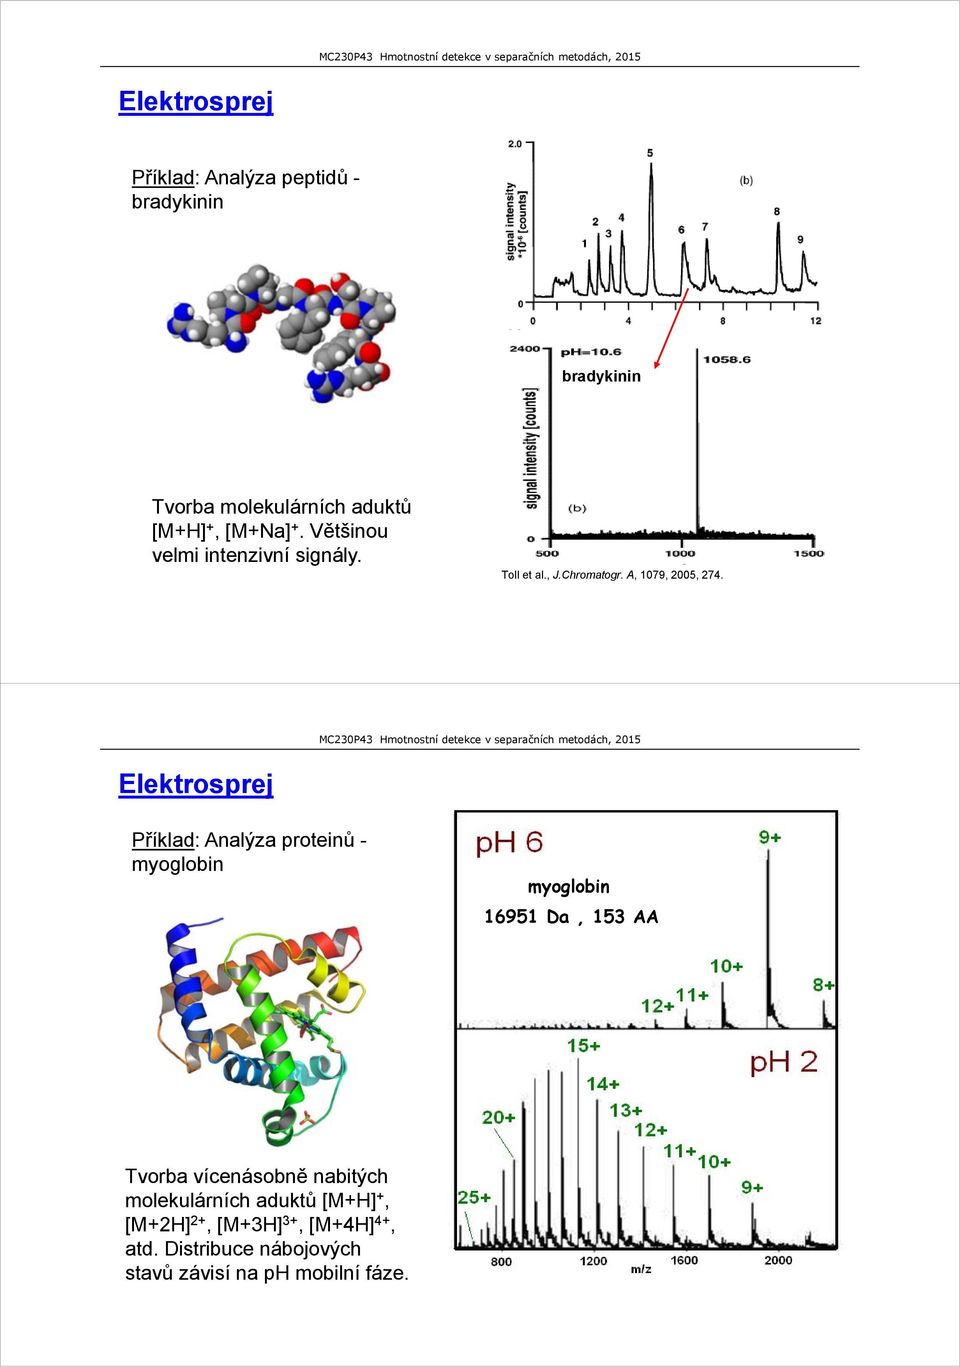 Elektrosprej Příklad: Analýza proteinů - myoglobin myoglobin 16951 Da, 153 AA Tvorba vícenásobně